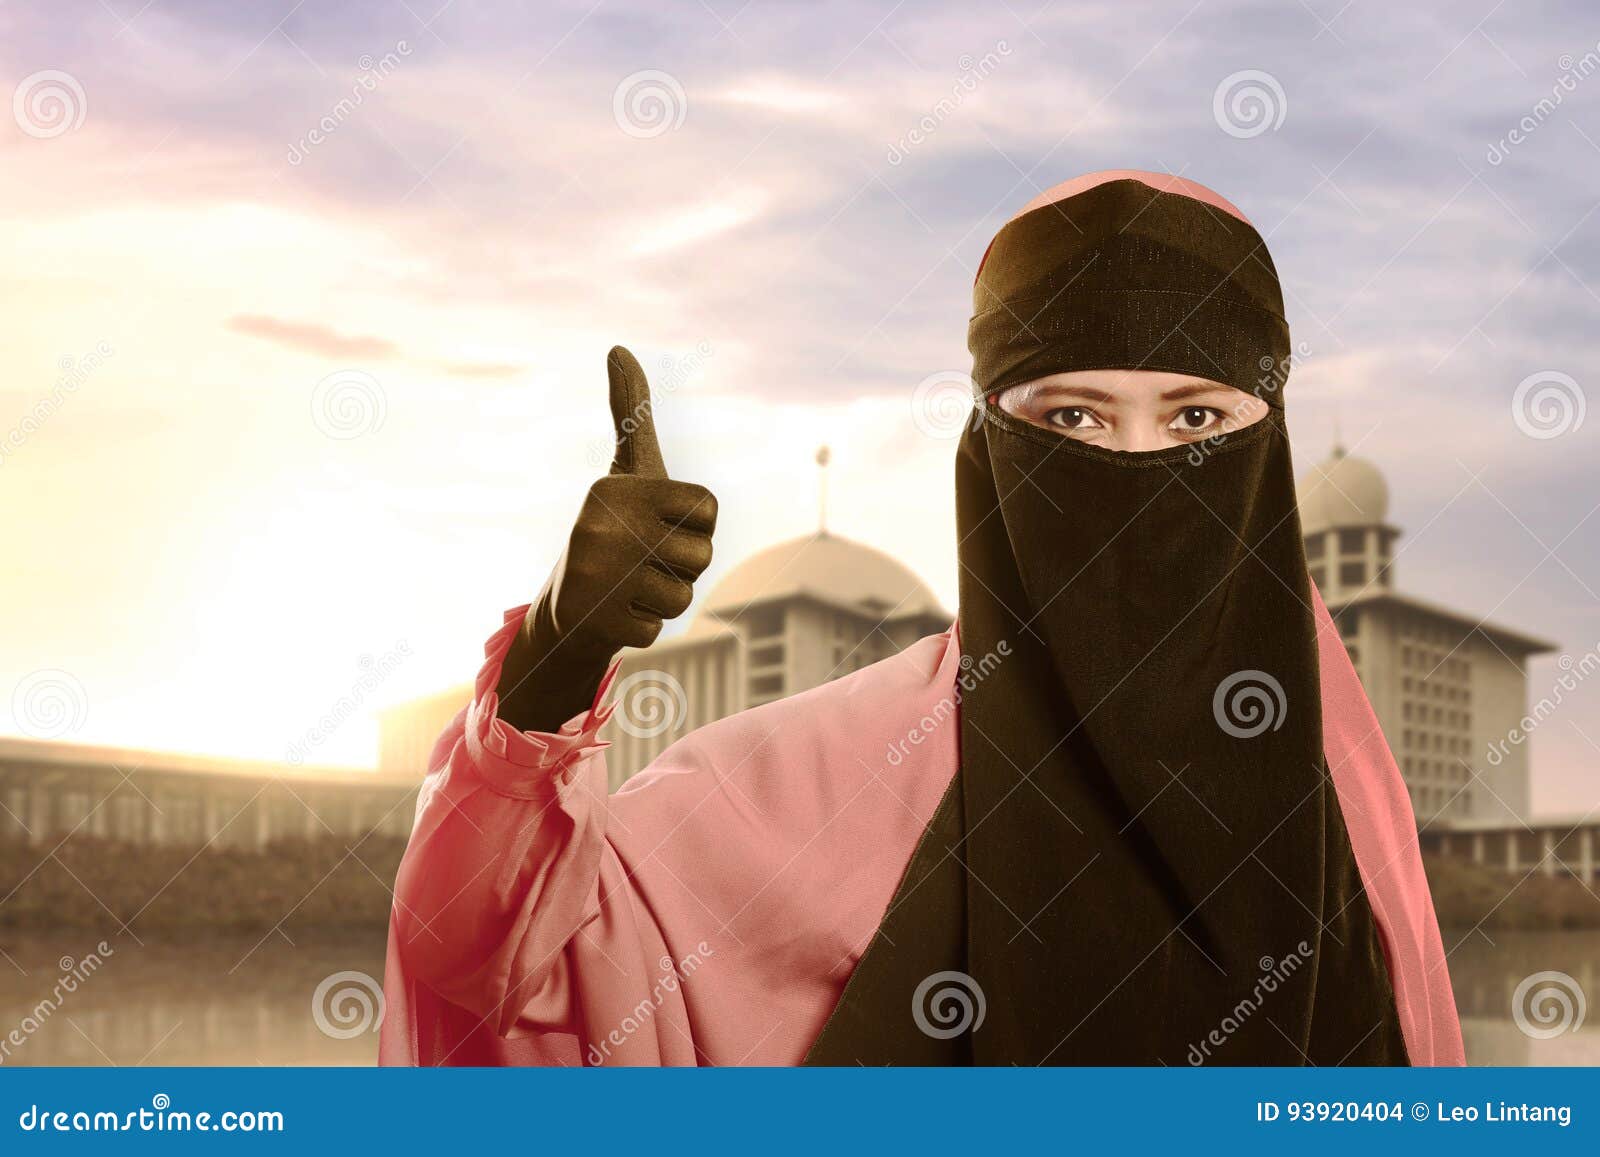 Поднятый палец вверх у мусульман. Мусульманин с поднятым пальцем. Мусульманка палец верх. Никаб палец вверх.